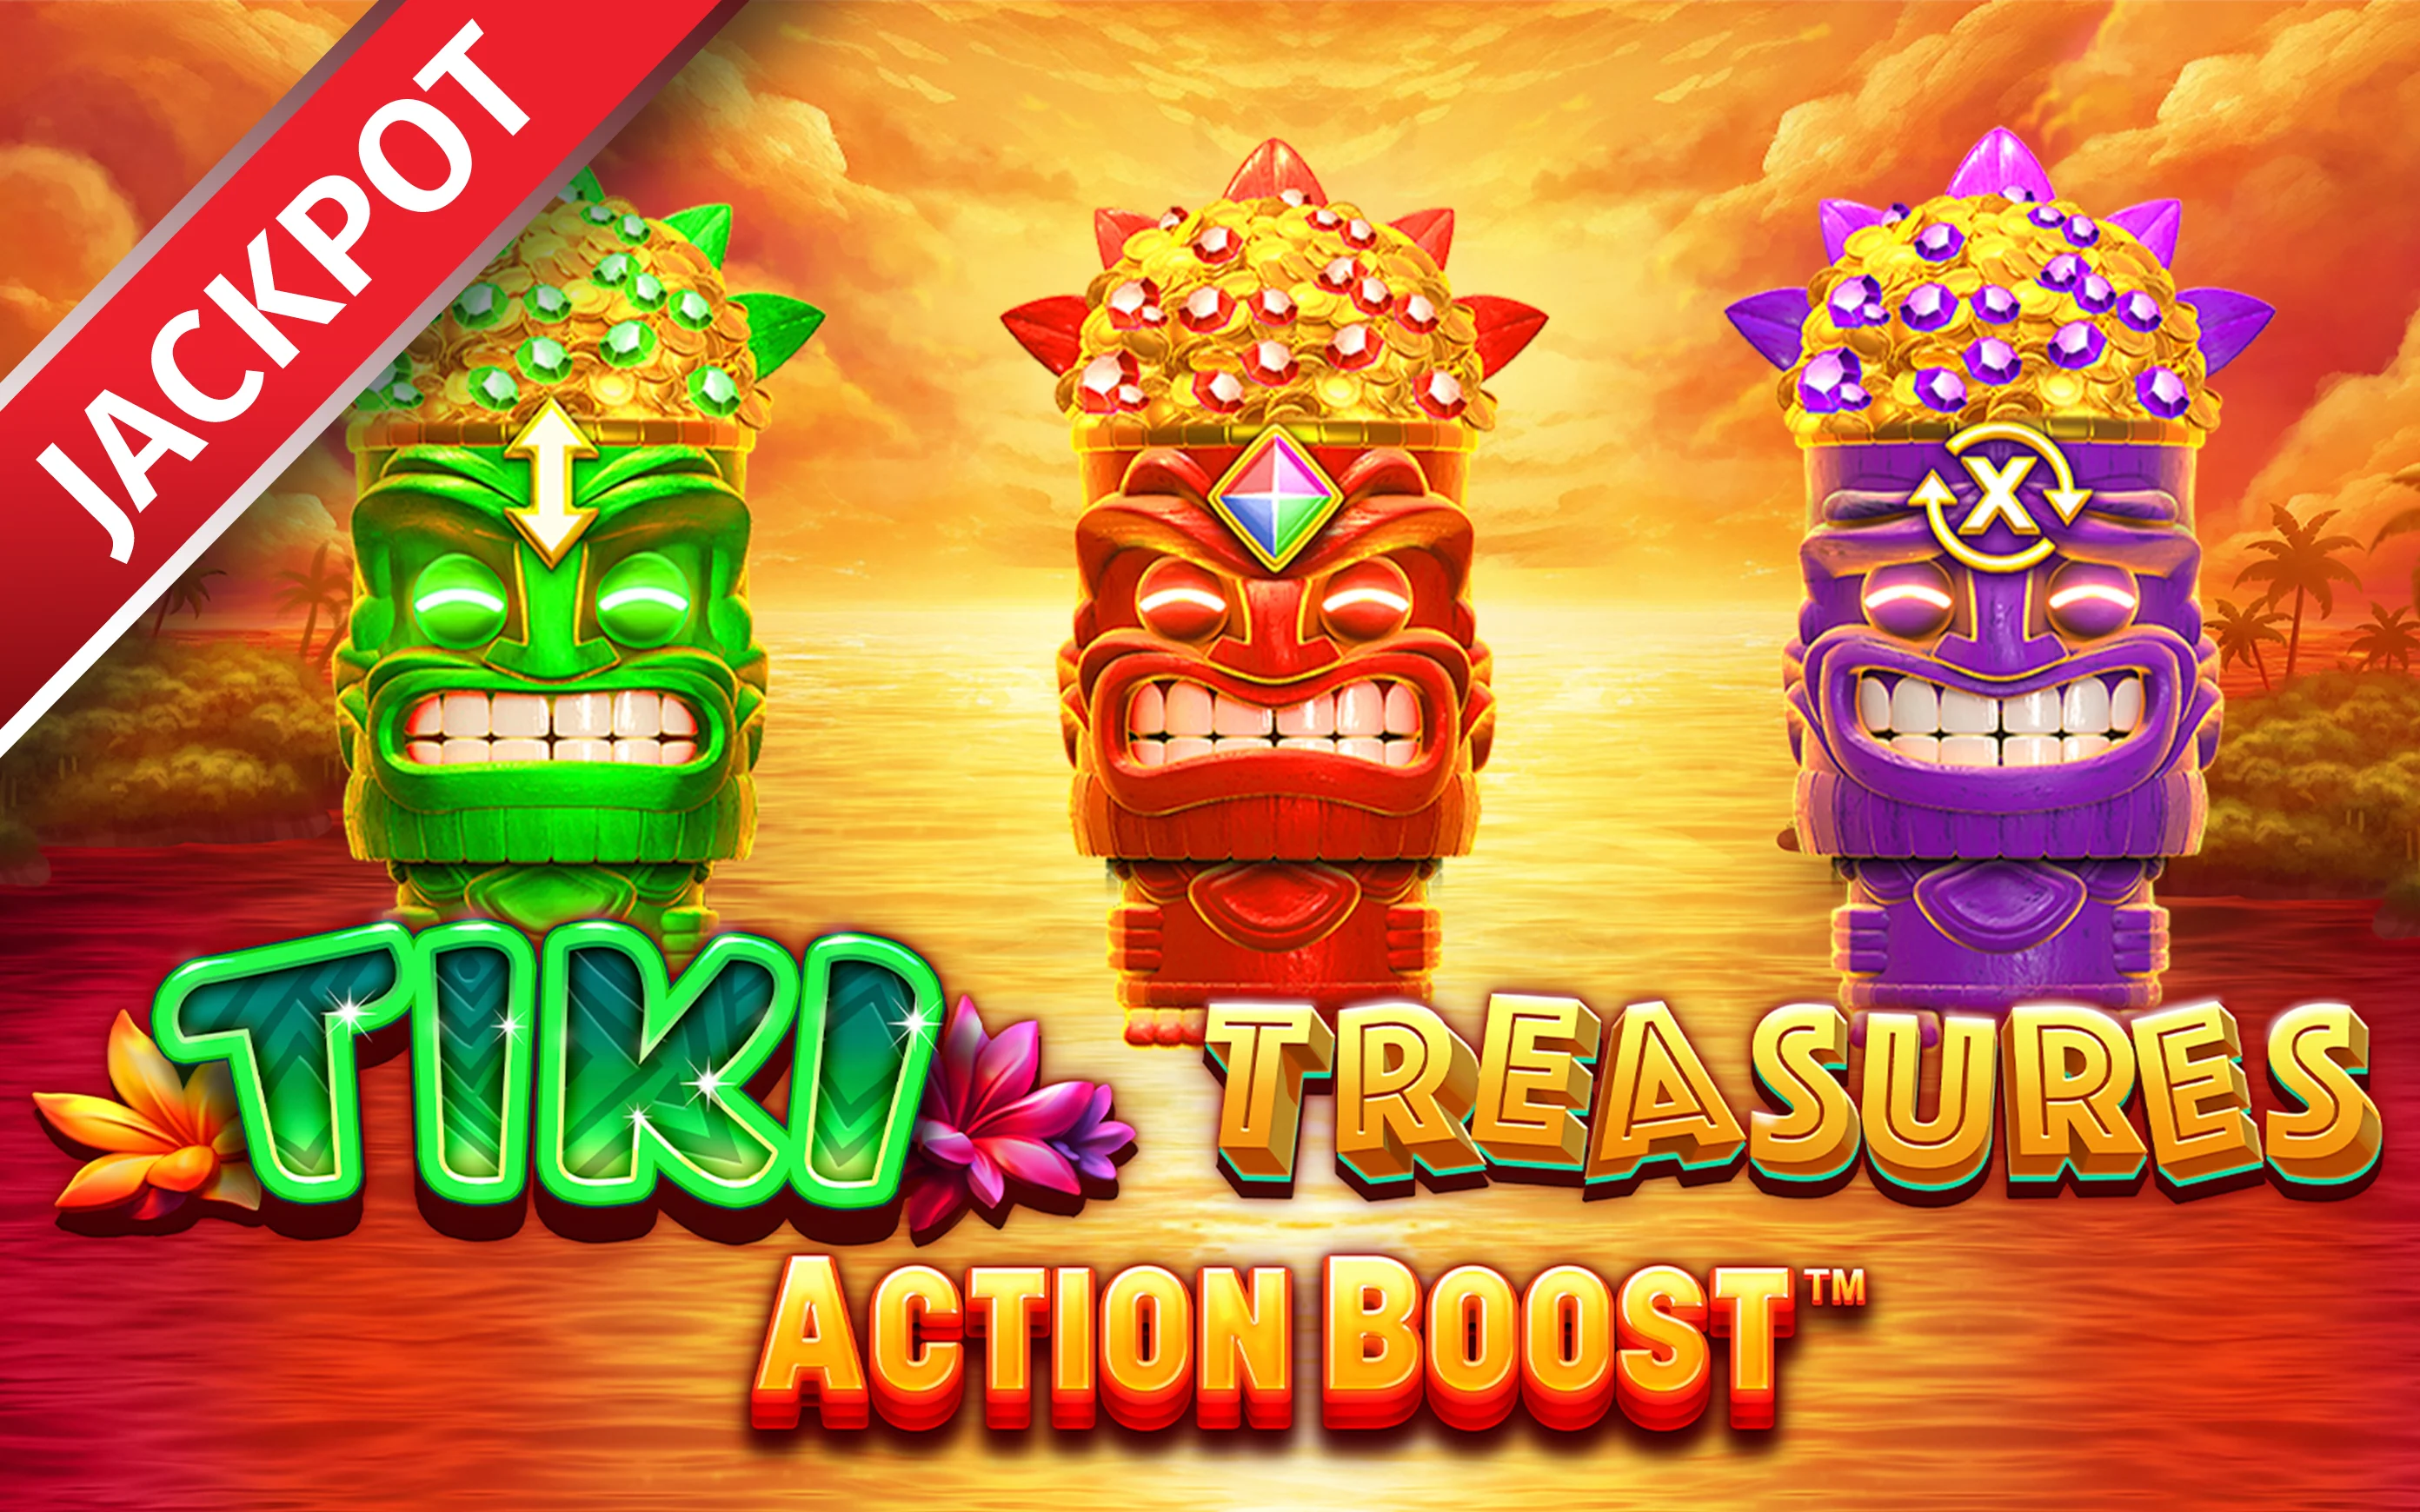 Zagraj w Action Boost™ Tiki Treasures w kasynie online Starcasino.be